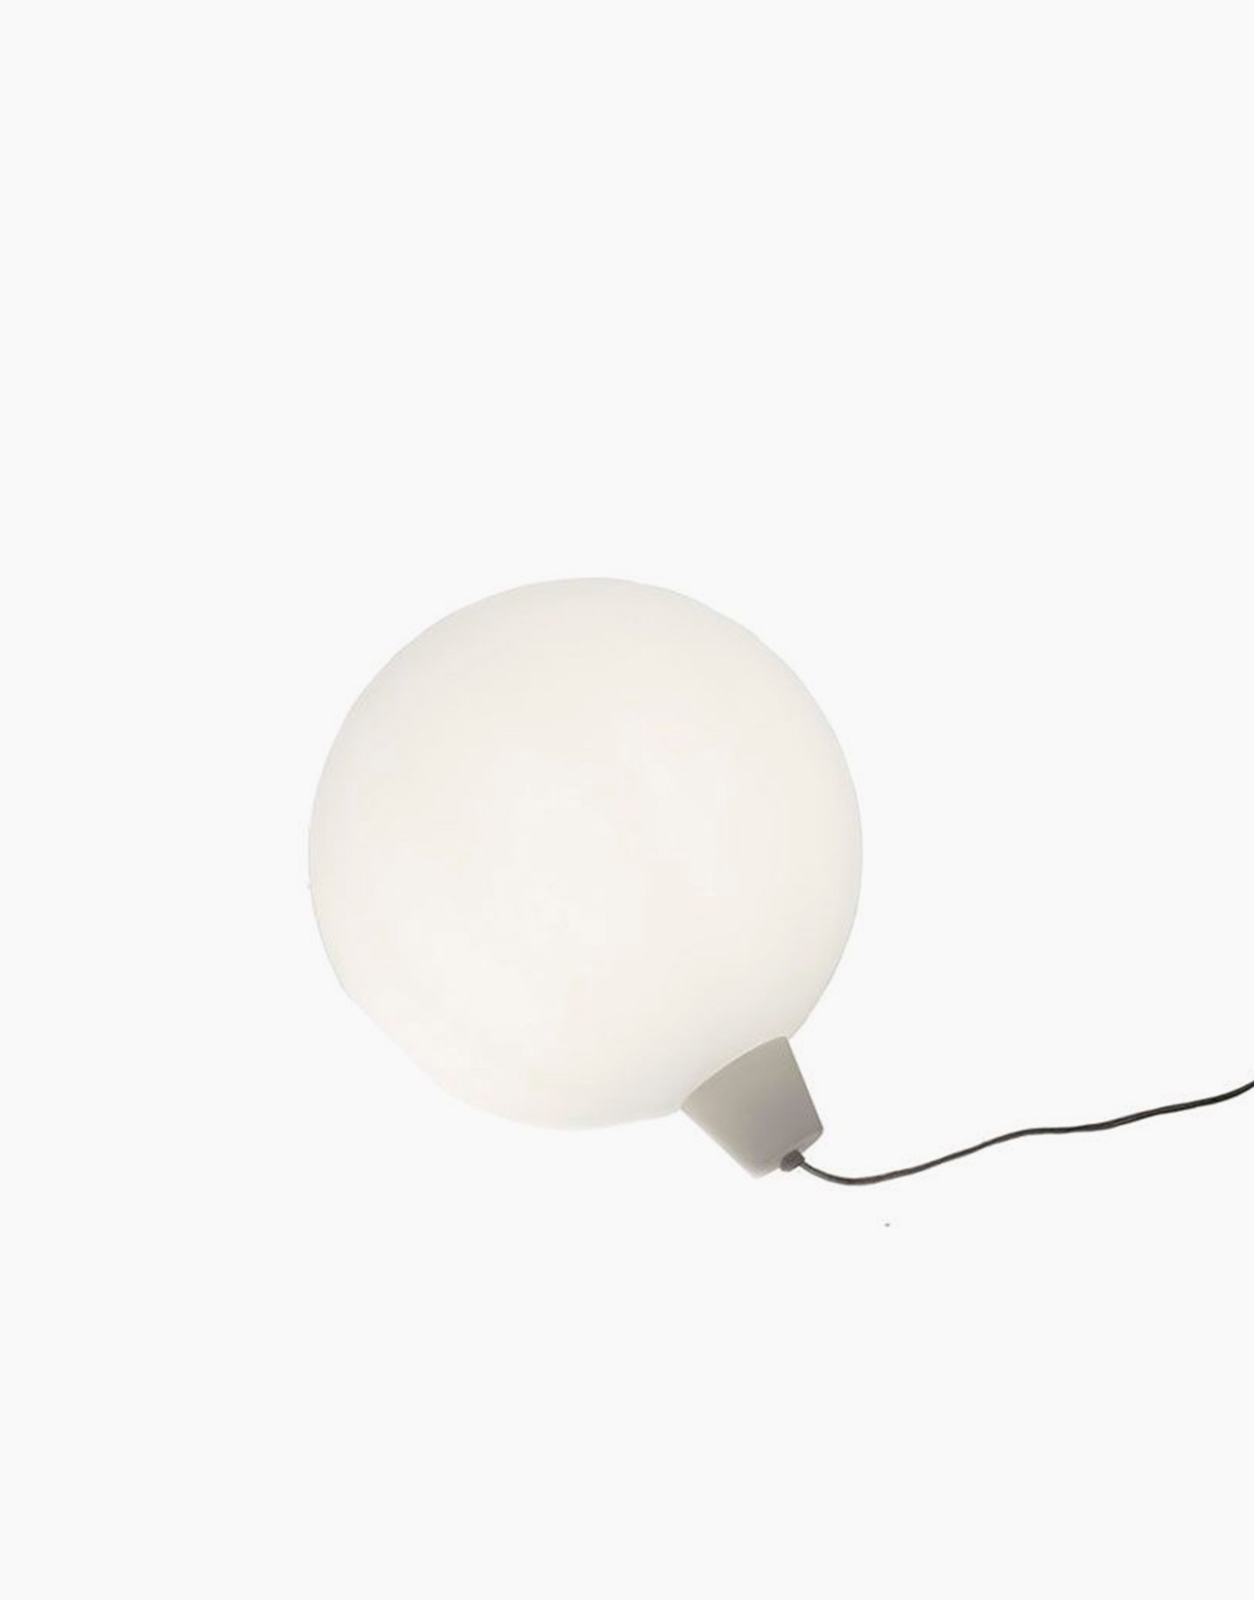 ACQUAGLOBO Lampe flottante d'extérieur Ø50cm Blanc Slide - LightOnline